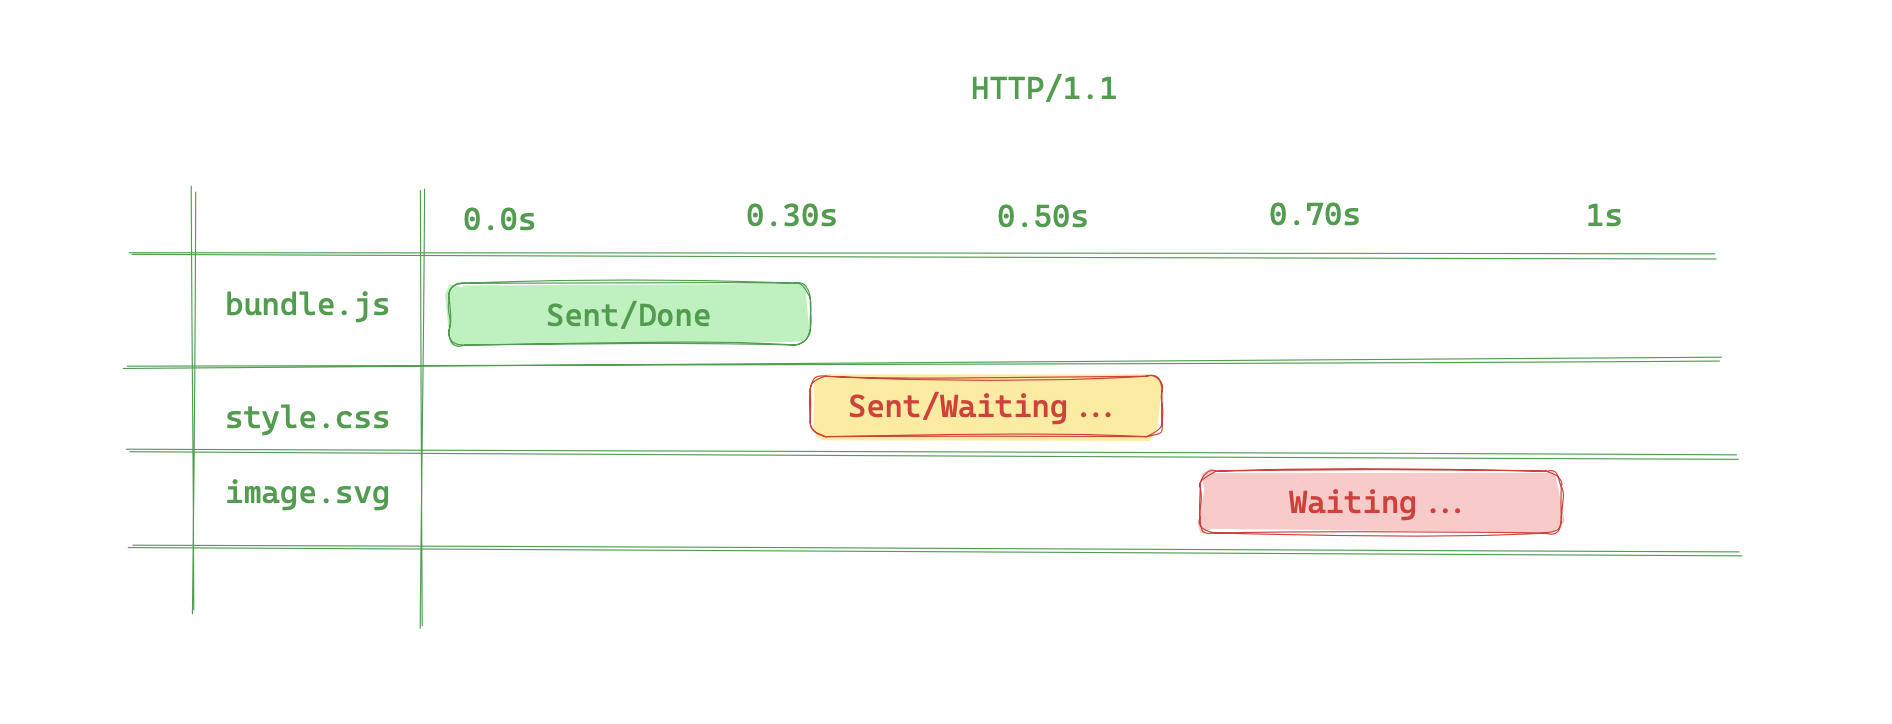 HTTP 1.1